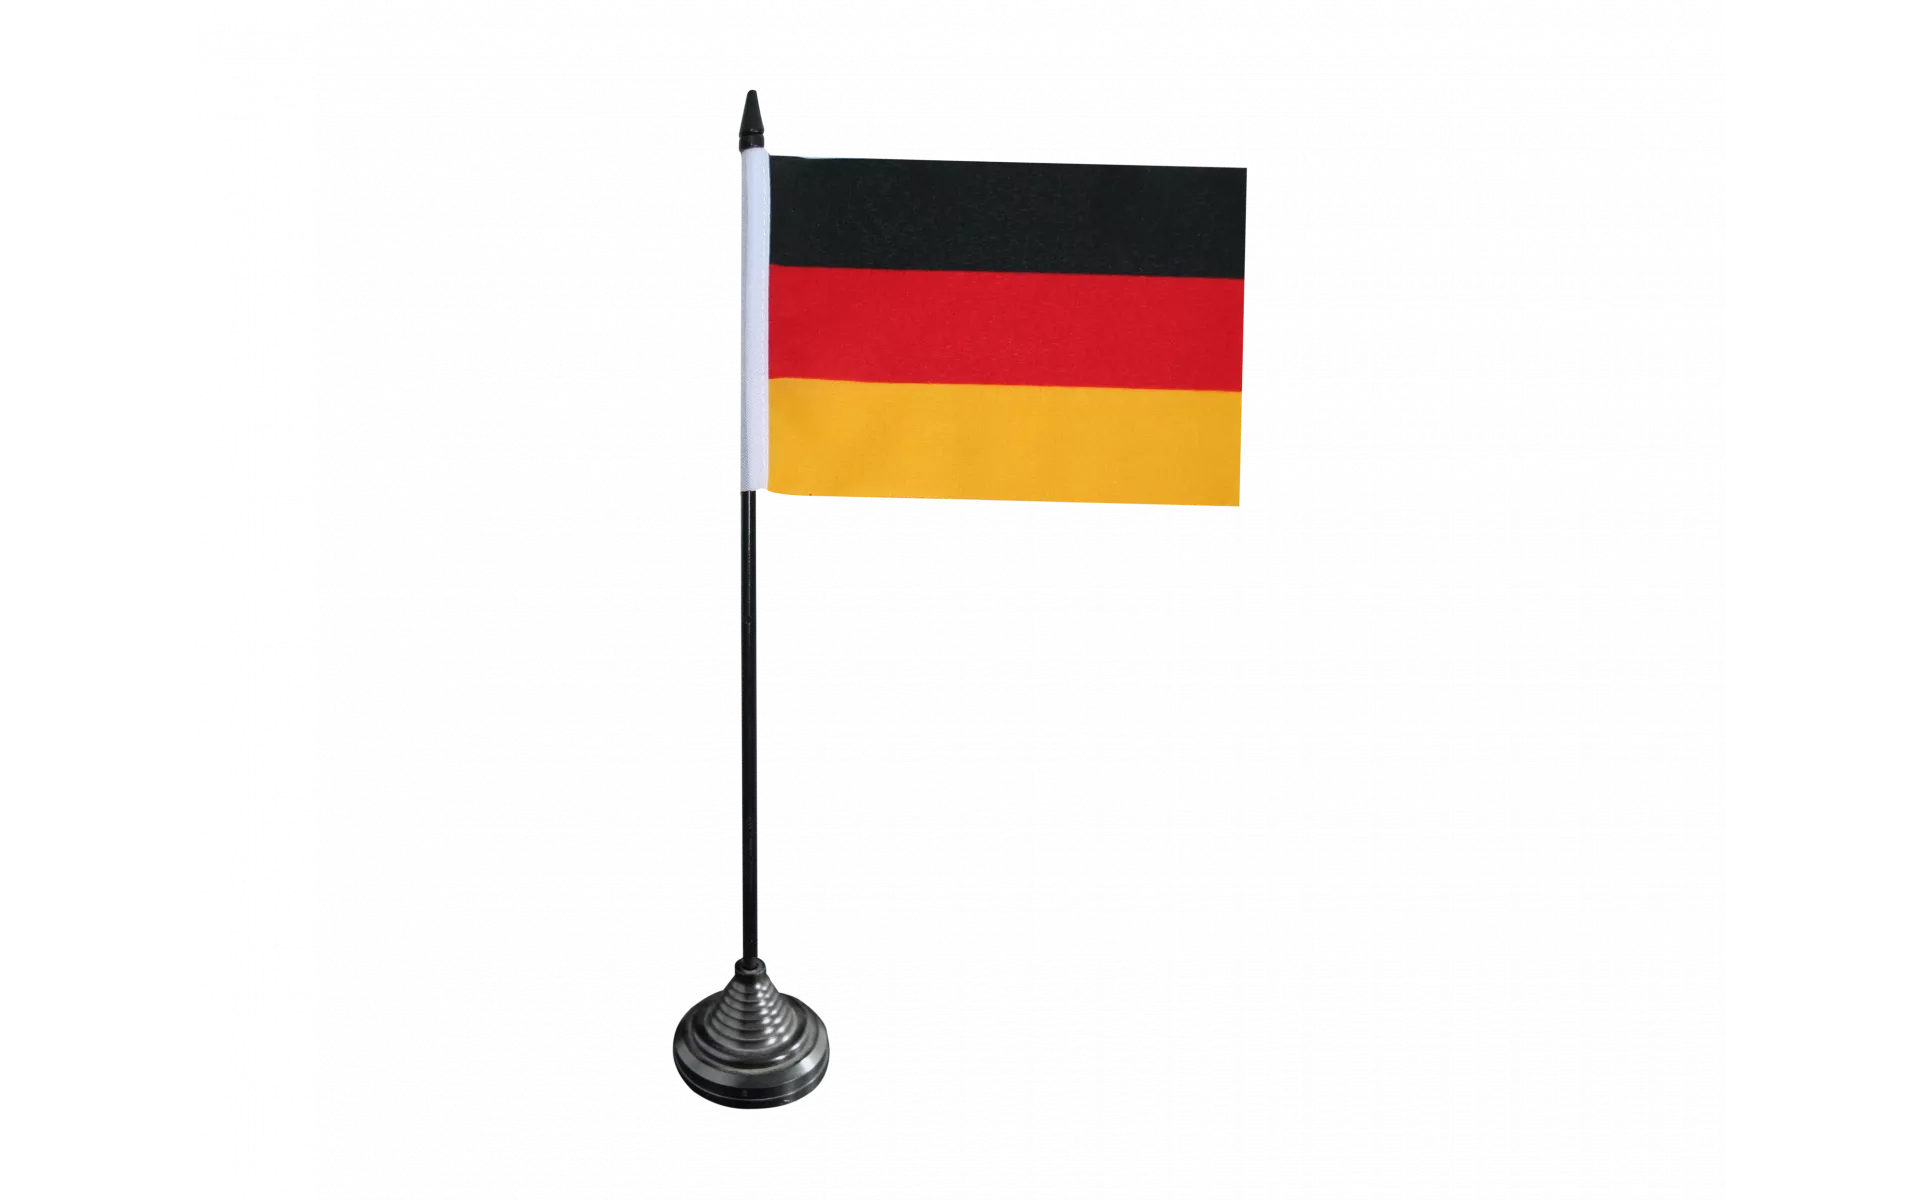 Tischflagge Dasing Tischfahne Fahne Flagge 10 x 15 cm 